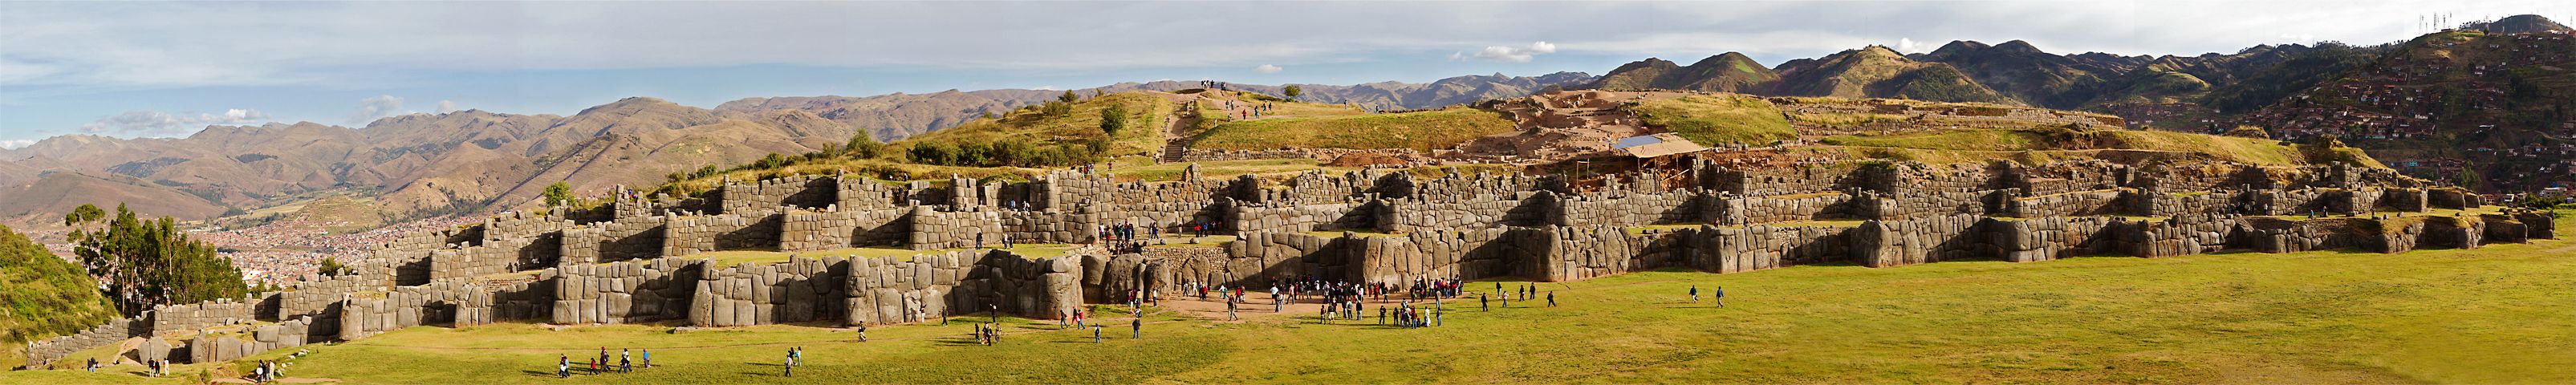 Peru019